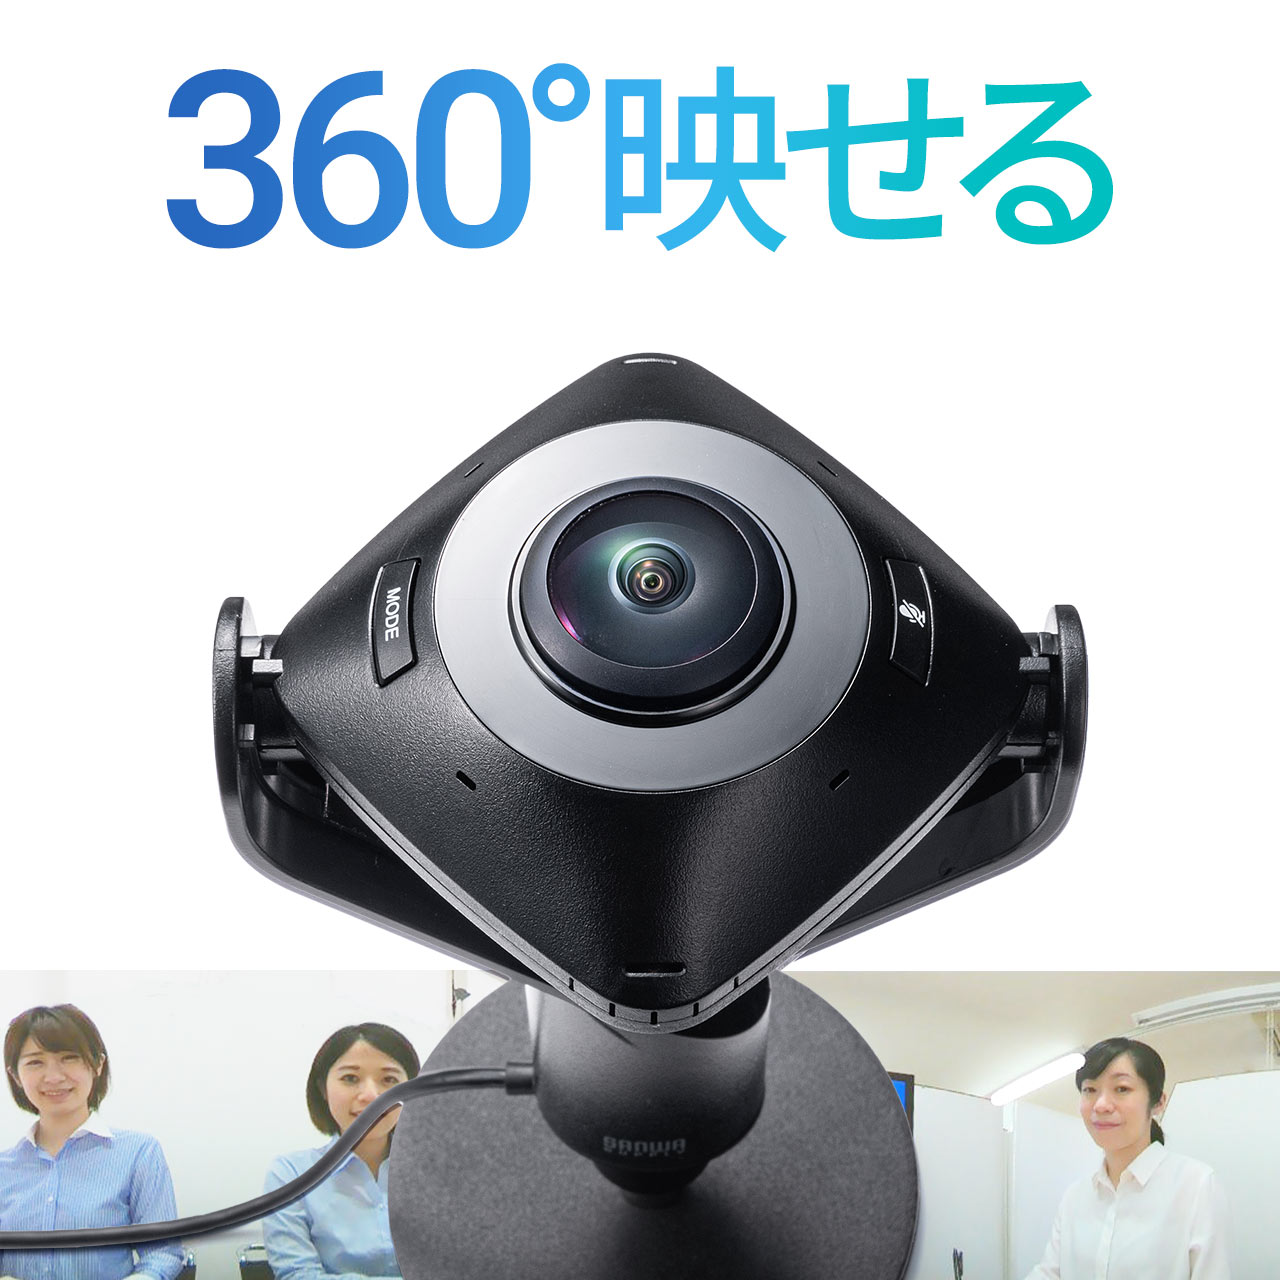 360度 WEBカメラ マイク付き ウェブカメラ 360° WEB会議 200万画素 マイク内蔵 マイク搭載 360度カメラ 三脚対応 レ…